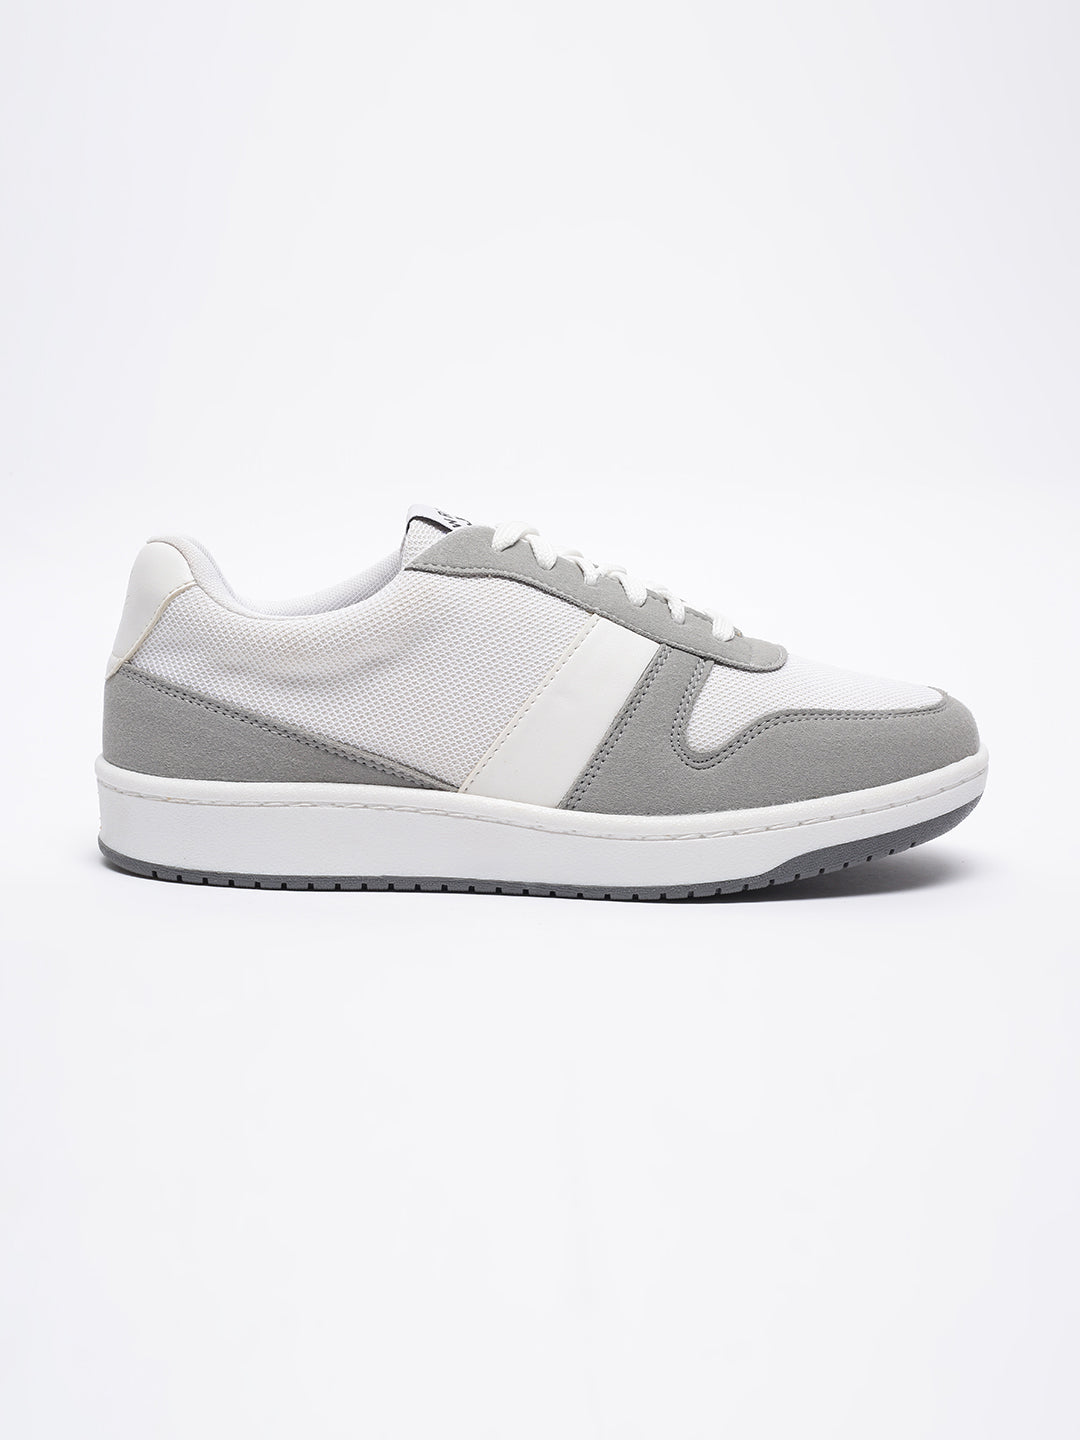 White & Grey Urban Sneakers